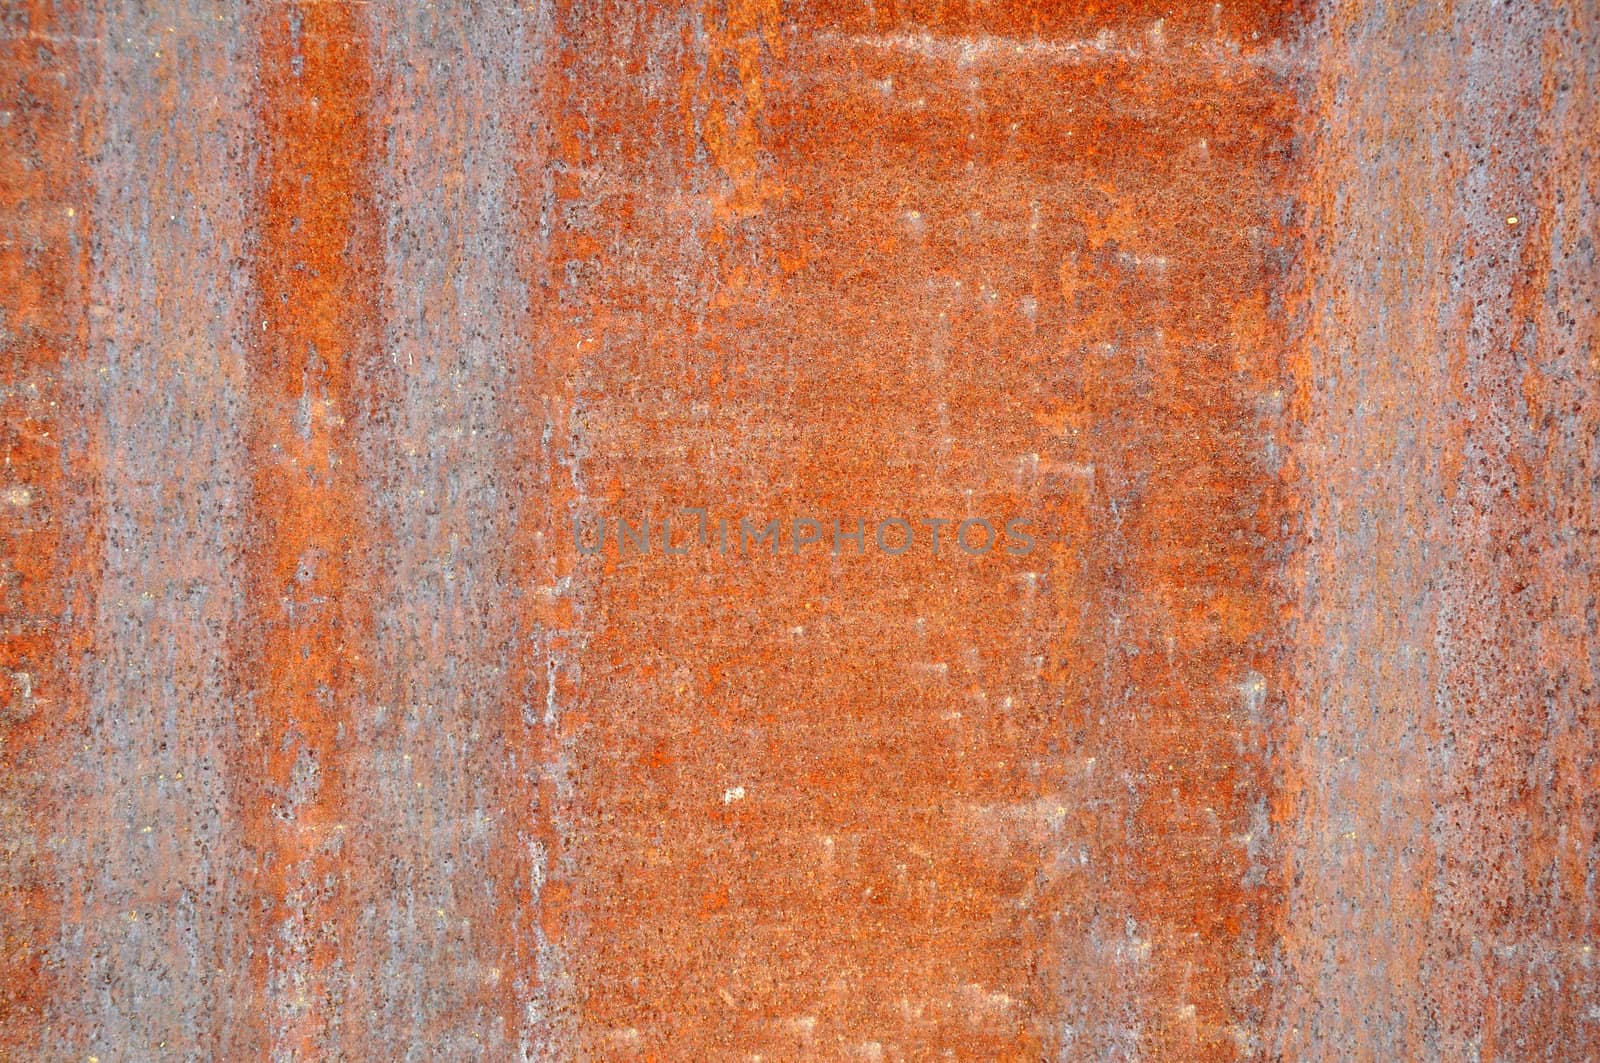 Reddish Stone Background by dehooks